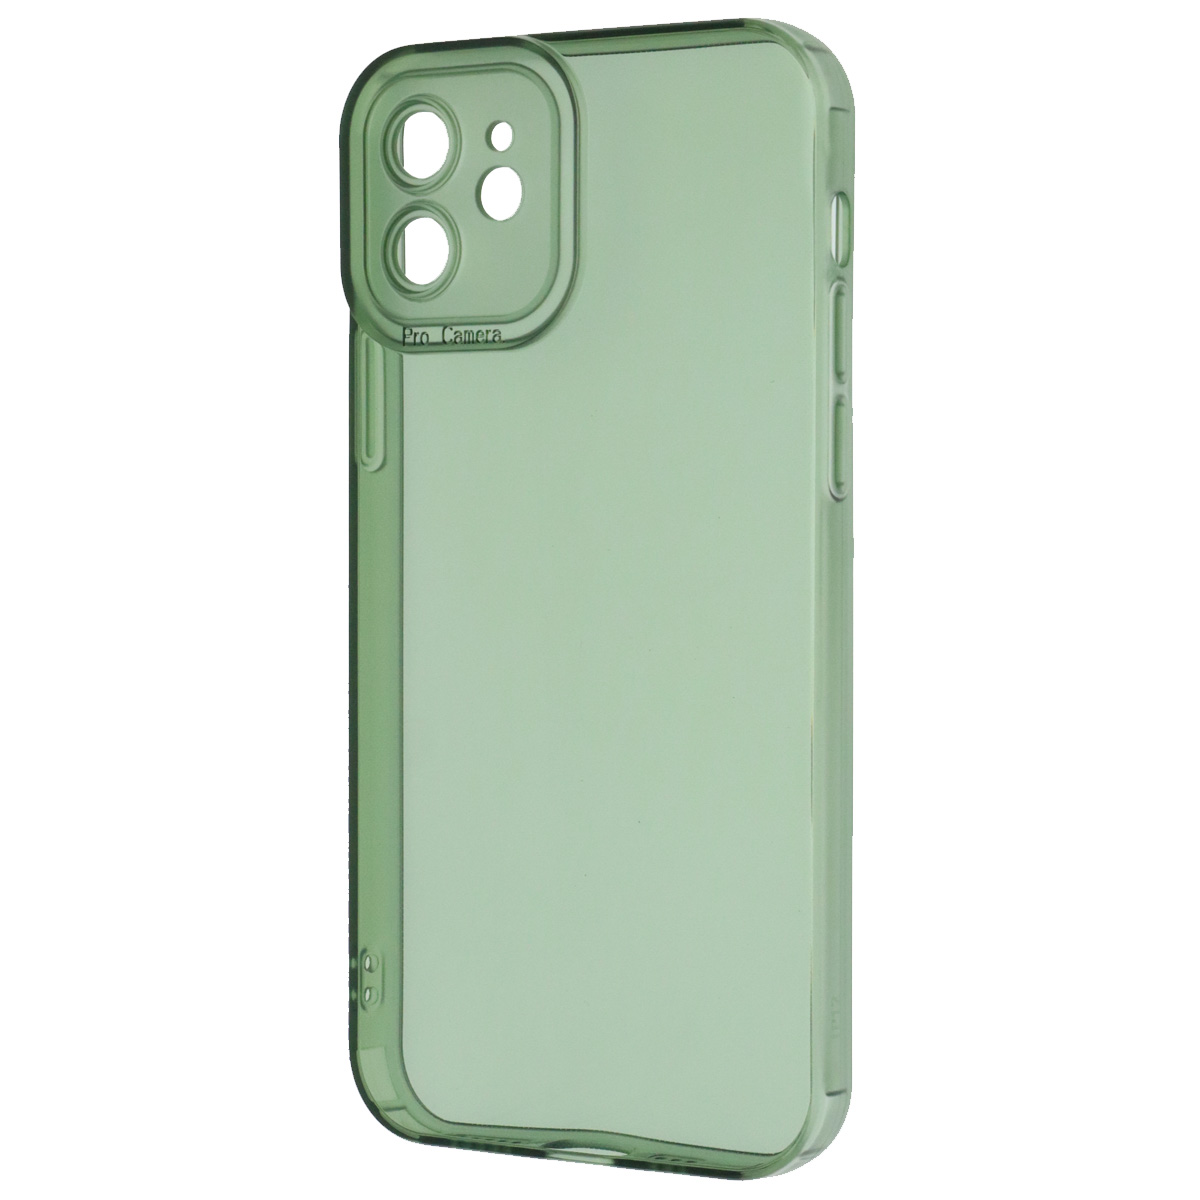 Чехол накладка CATEYES для APPLE iPhone 12, защита камеры, силикон, цвет прозрачно зеленый